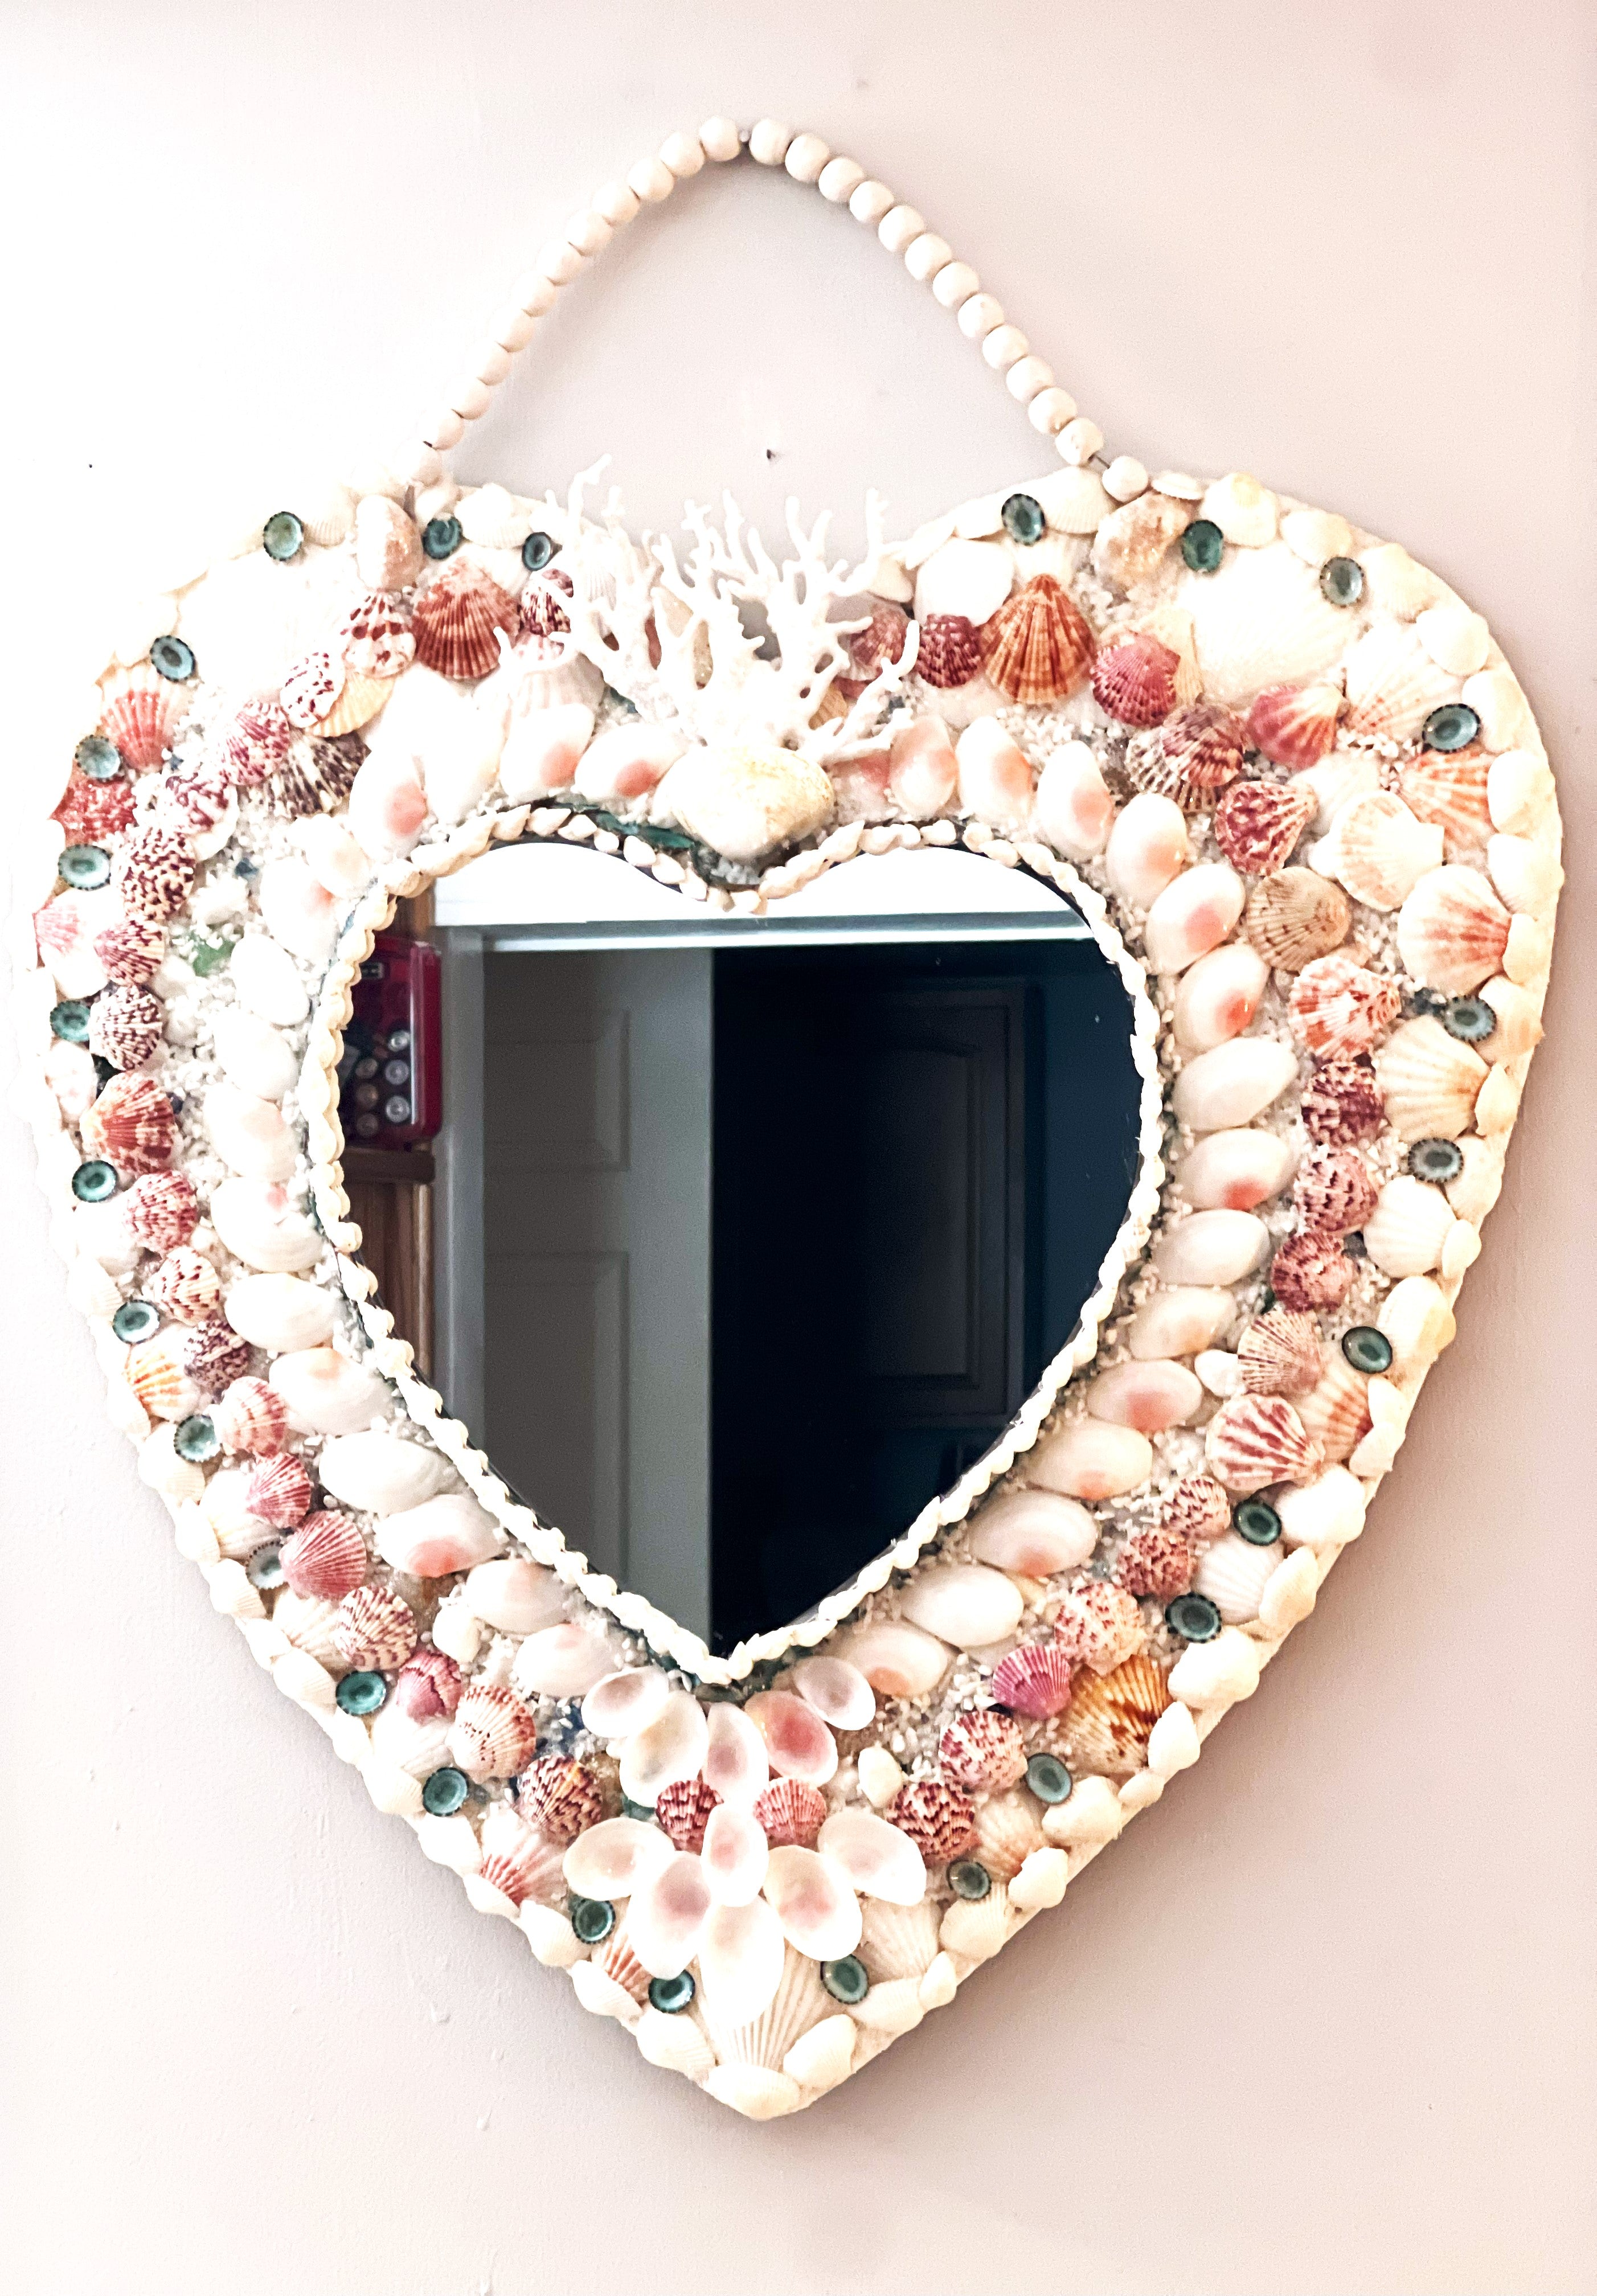 Heart SeaShell Mirror-24" L X 22" W X 12" Heart Mirror